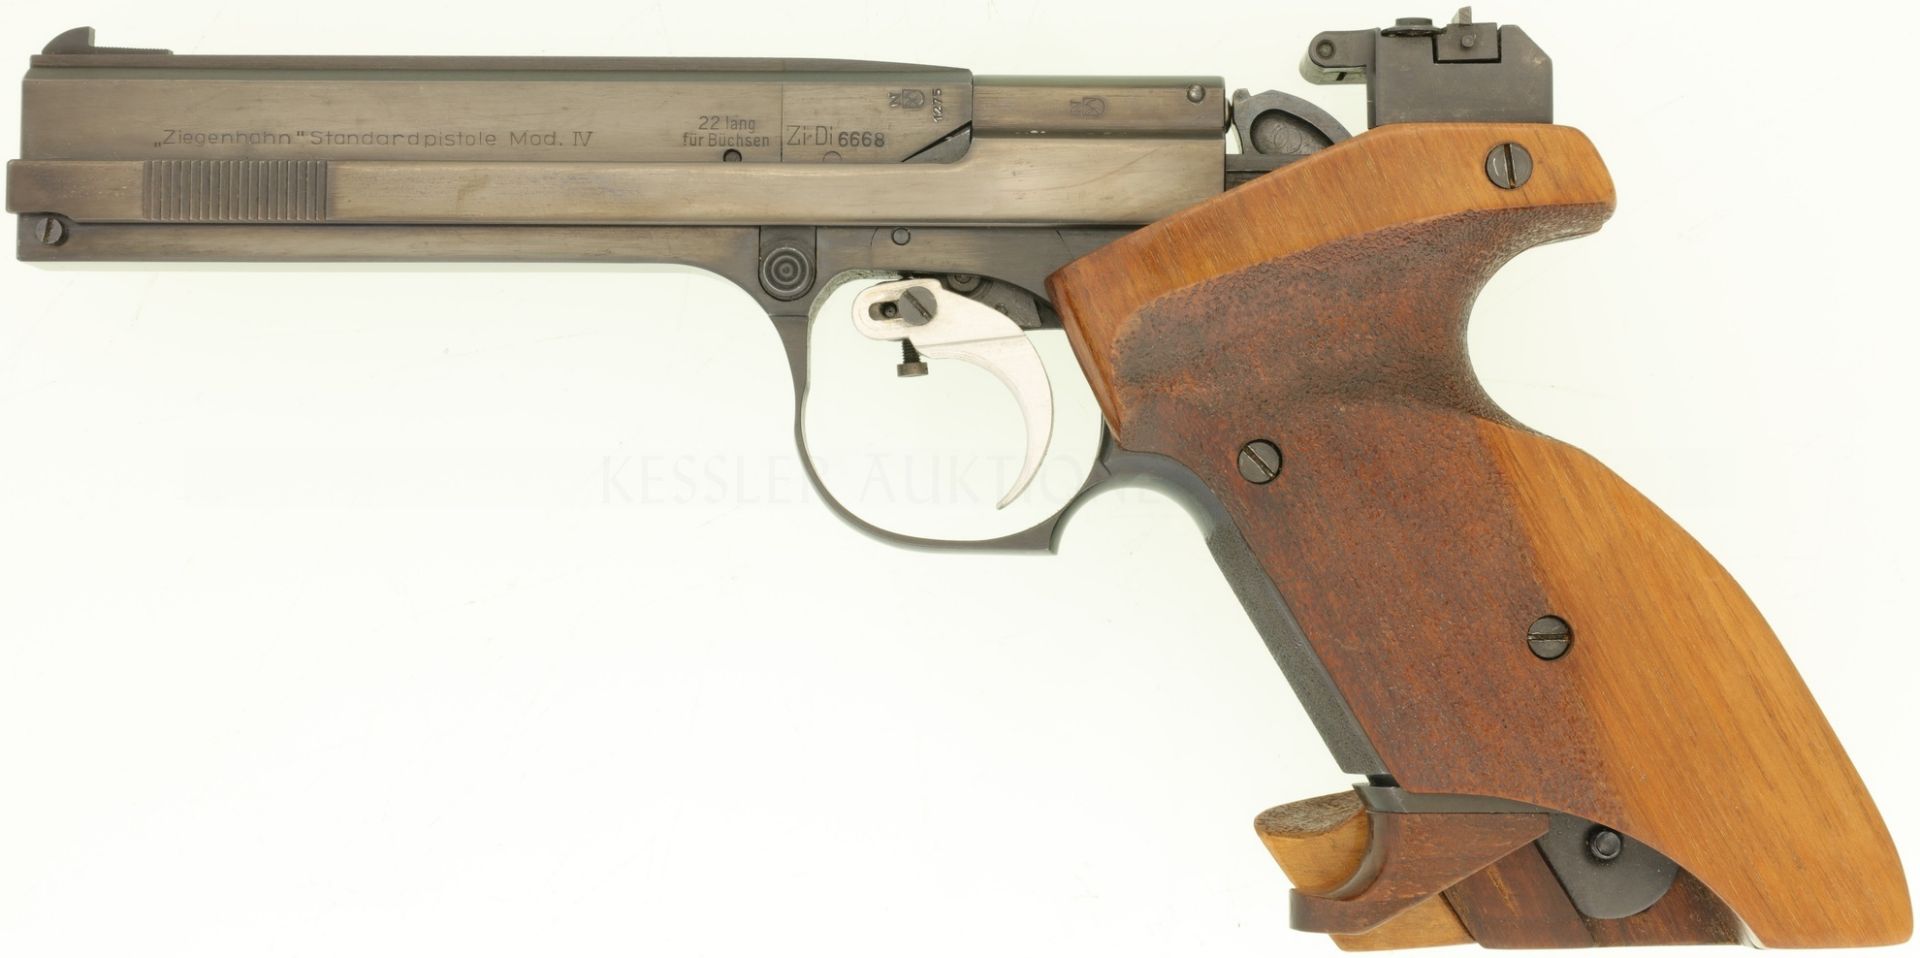 Sportpistole, Ziegenhahn Mod. IV, Kal. .22LR